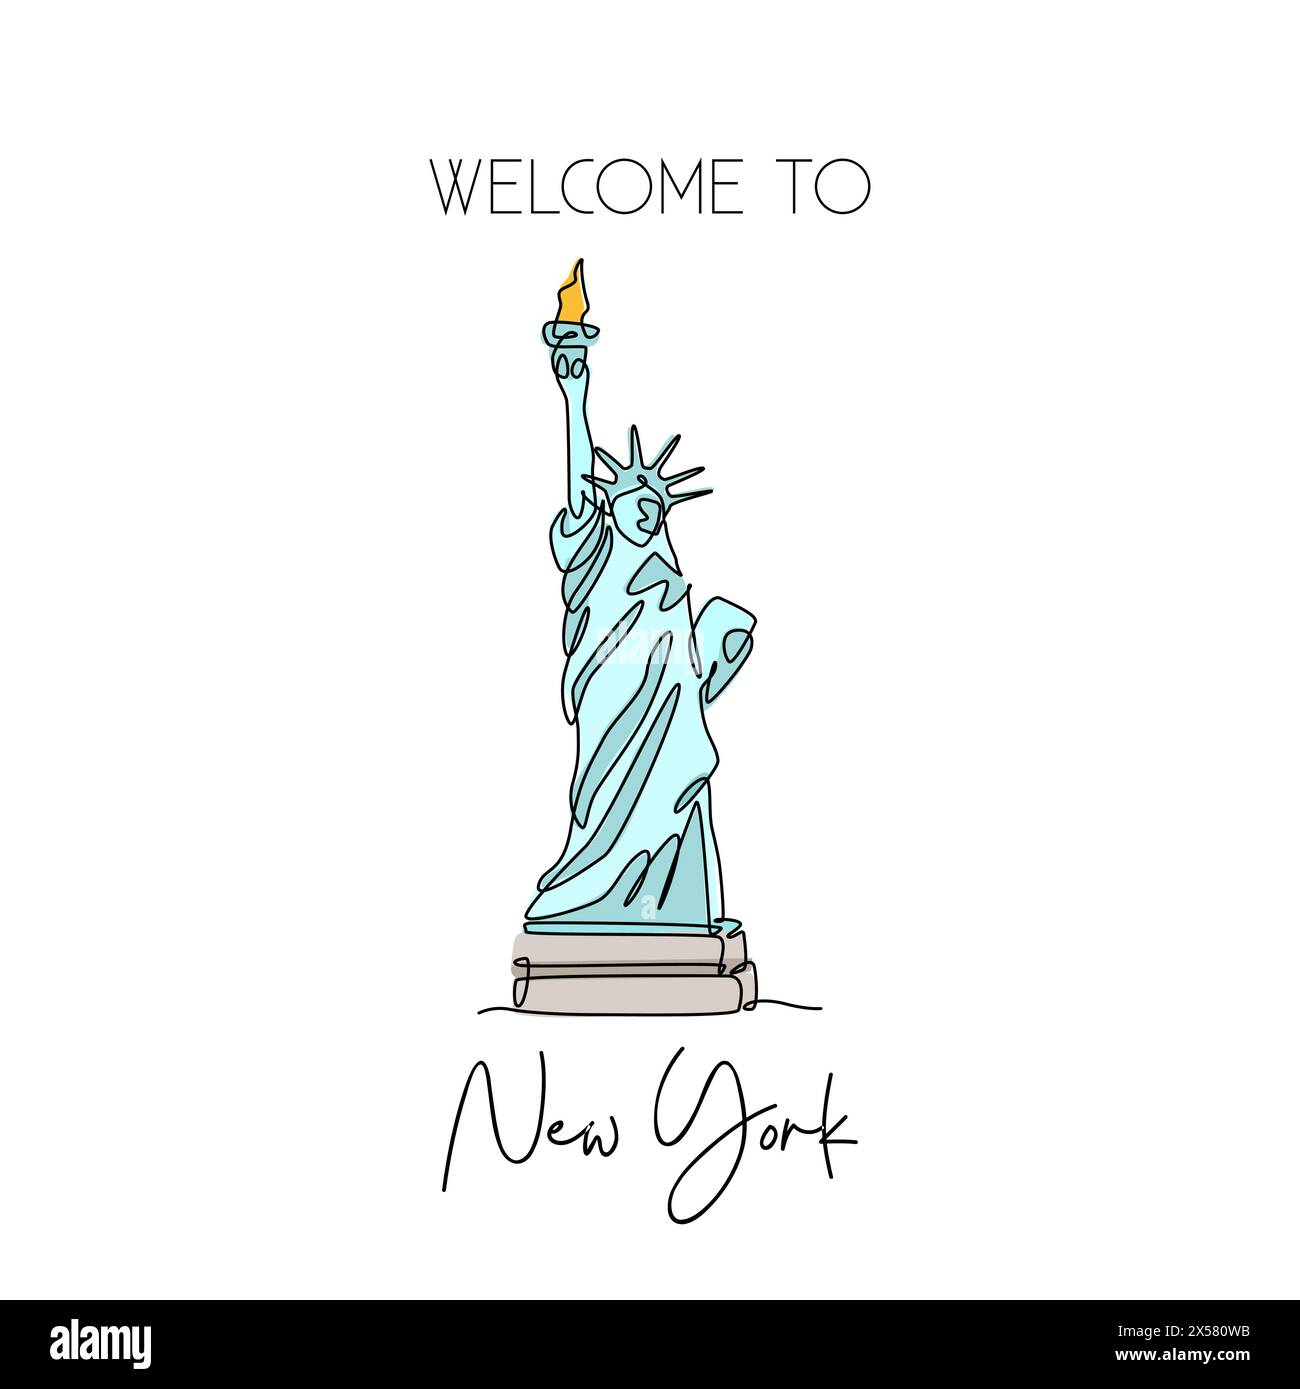 Dessin d'une seule ligne continue de la Statue de la liberté. Lieu emblématique de New York, États-Unis. Concept d'impression d'affiche d'art mural décoration maison. Mod Illustration de Vecteur